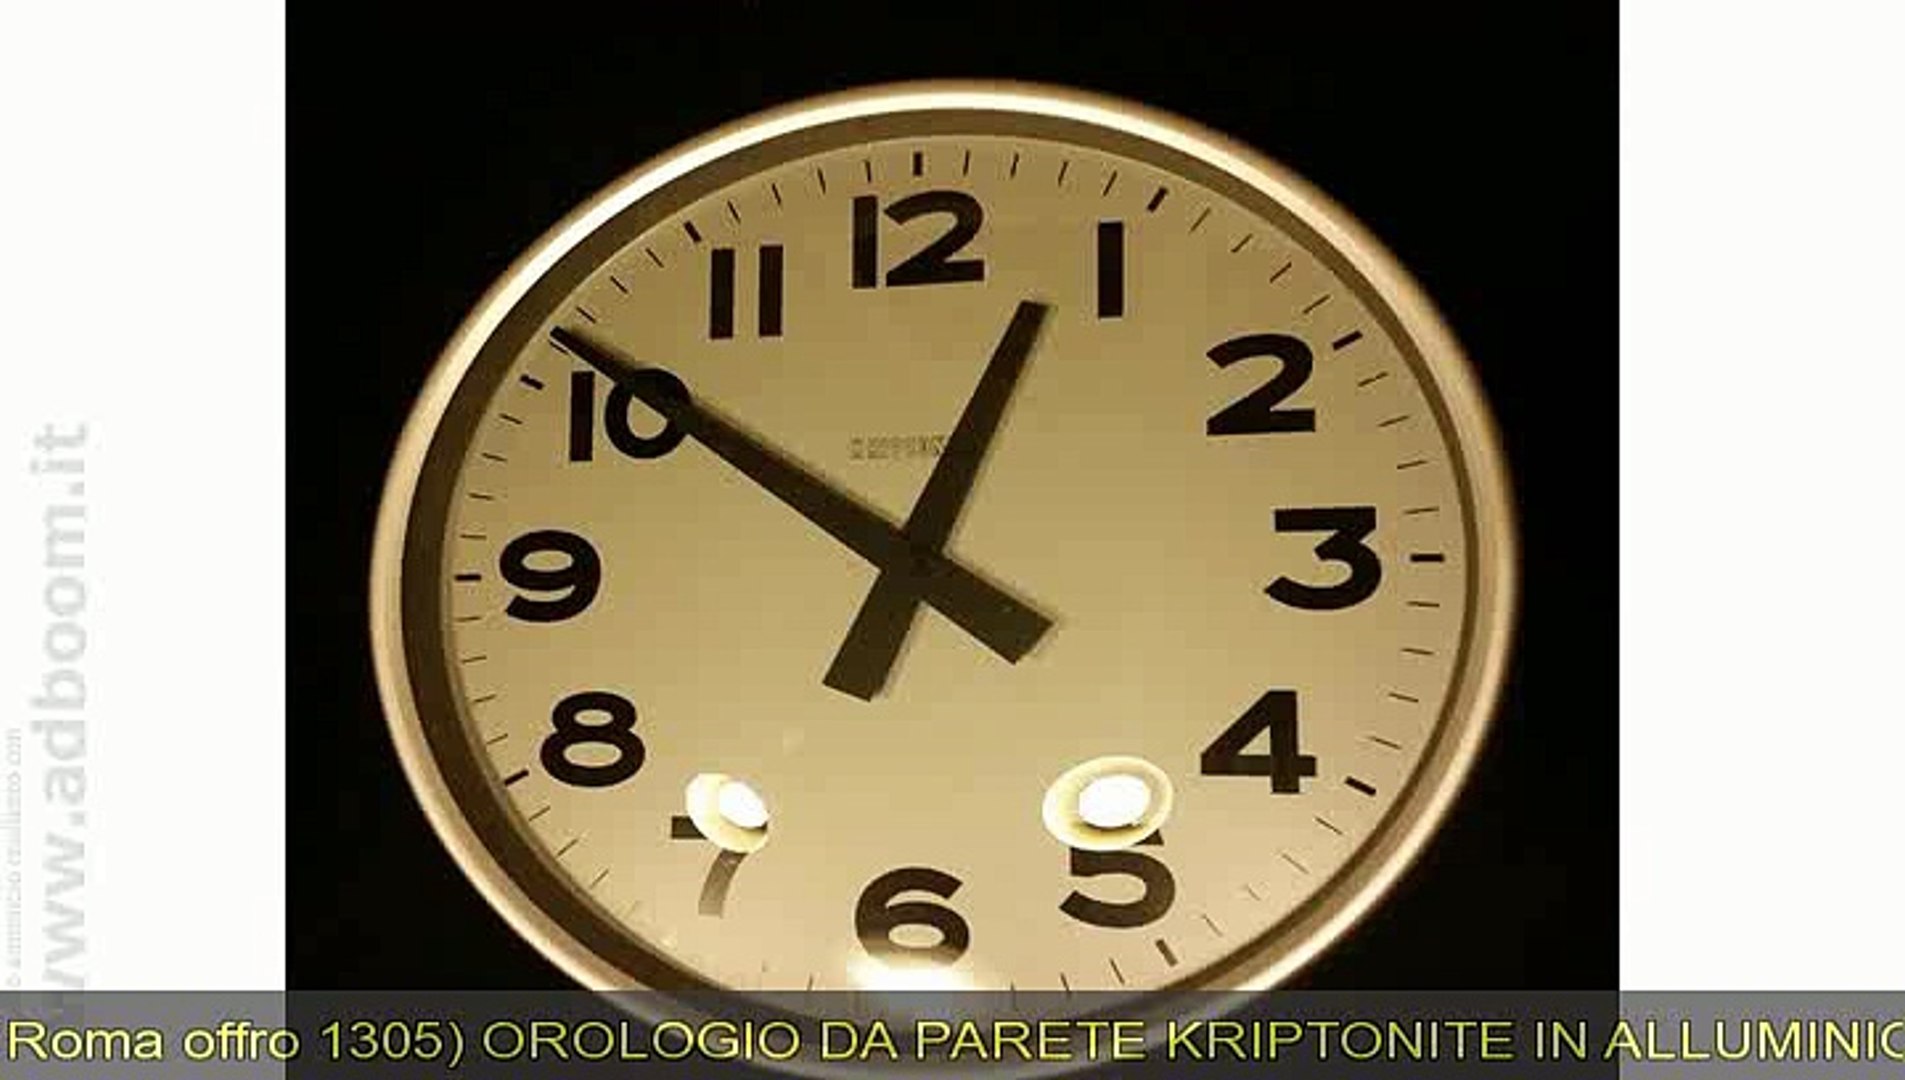 ROMA, 1305) OROLOGIO DA PARETE KRIPTONITE IN ALLUMINIO EURO 55 - Video  Dailymotion